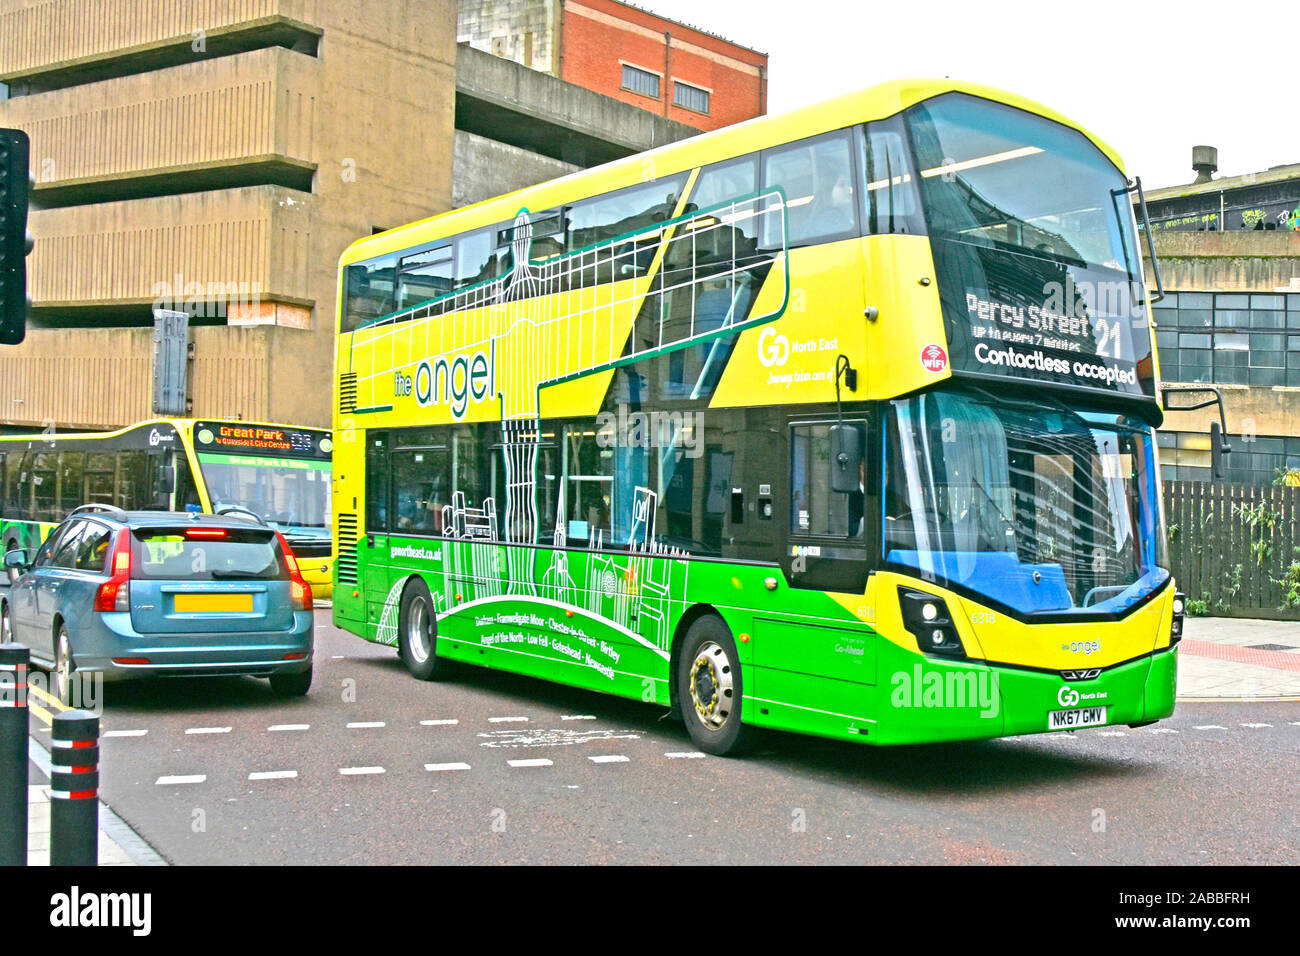 Engel des Nordens Grafiken auf der Seite von GO North East Route 21 gelb & grün Double Decker öffentliche Verkehrsmittel Bus in Newcastle Upon Tyne England UK gesehen Stockfoto